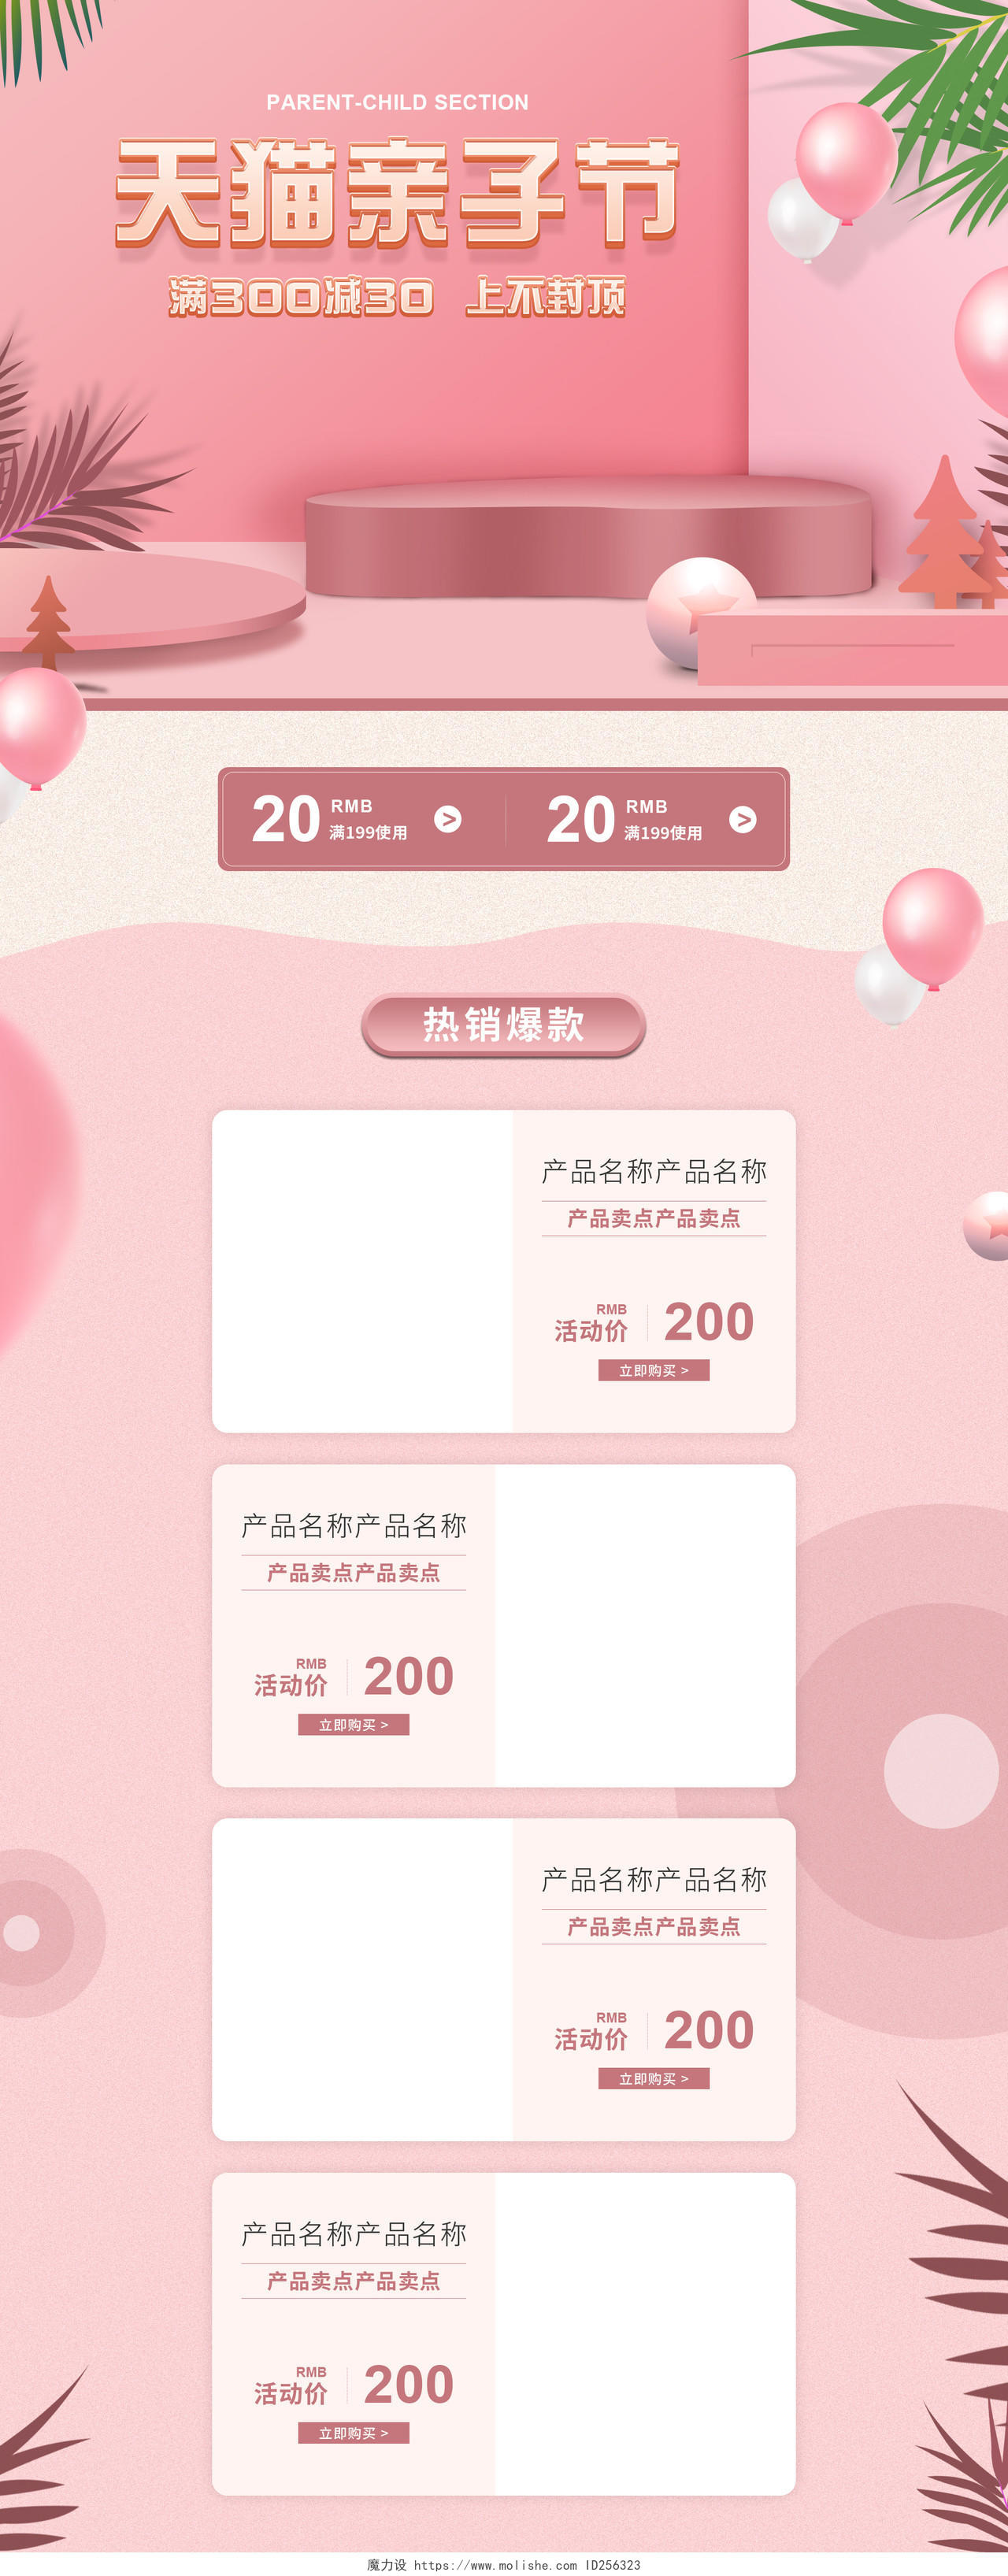 天猫亲子节粉色简约母婴节日活动促销天猫首页电商模板